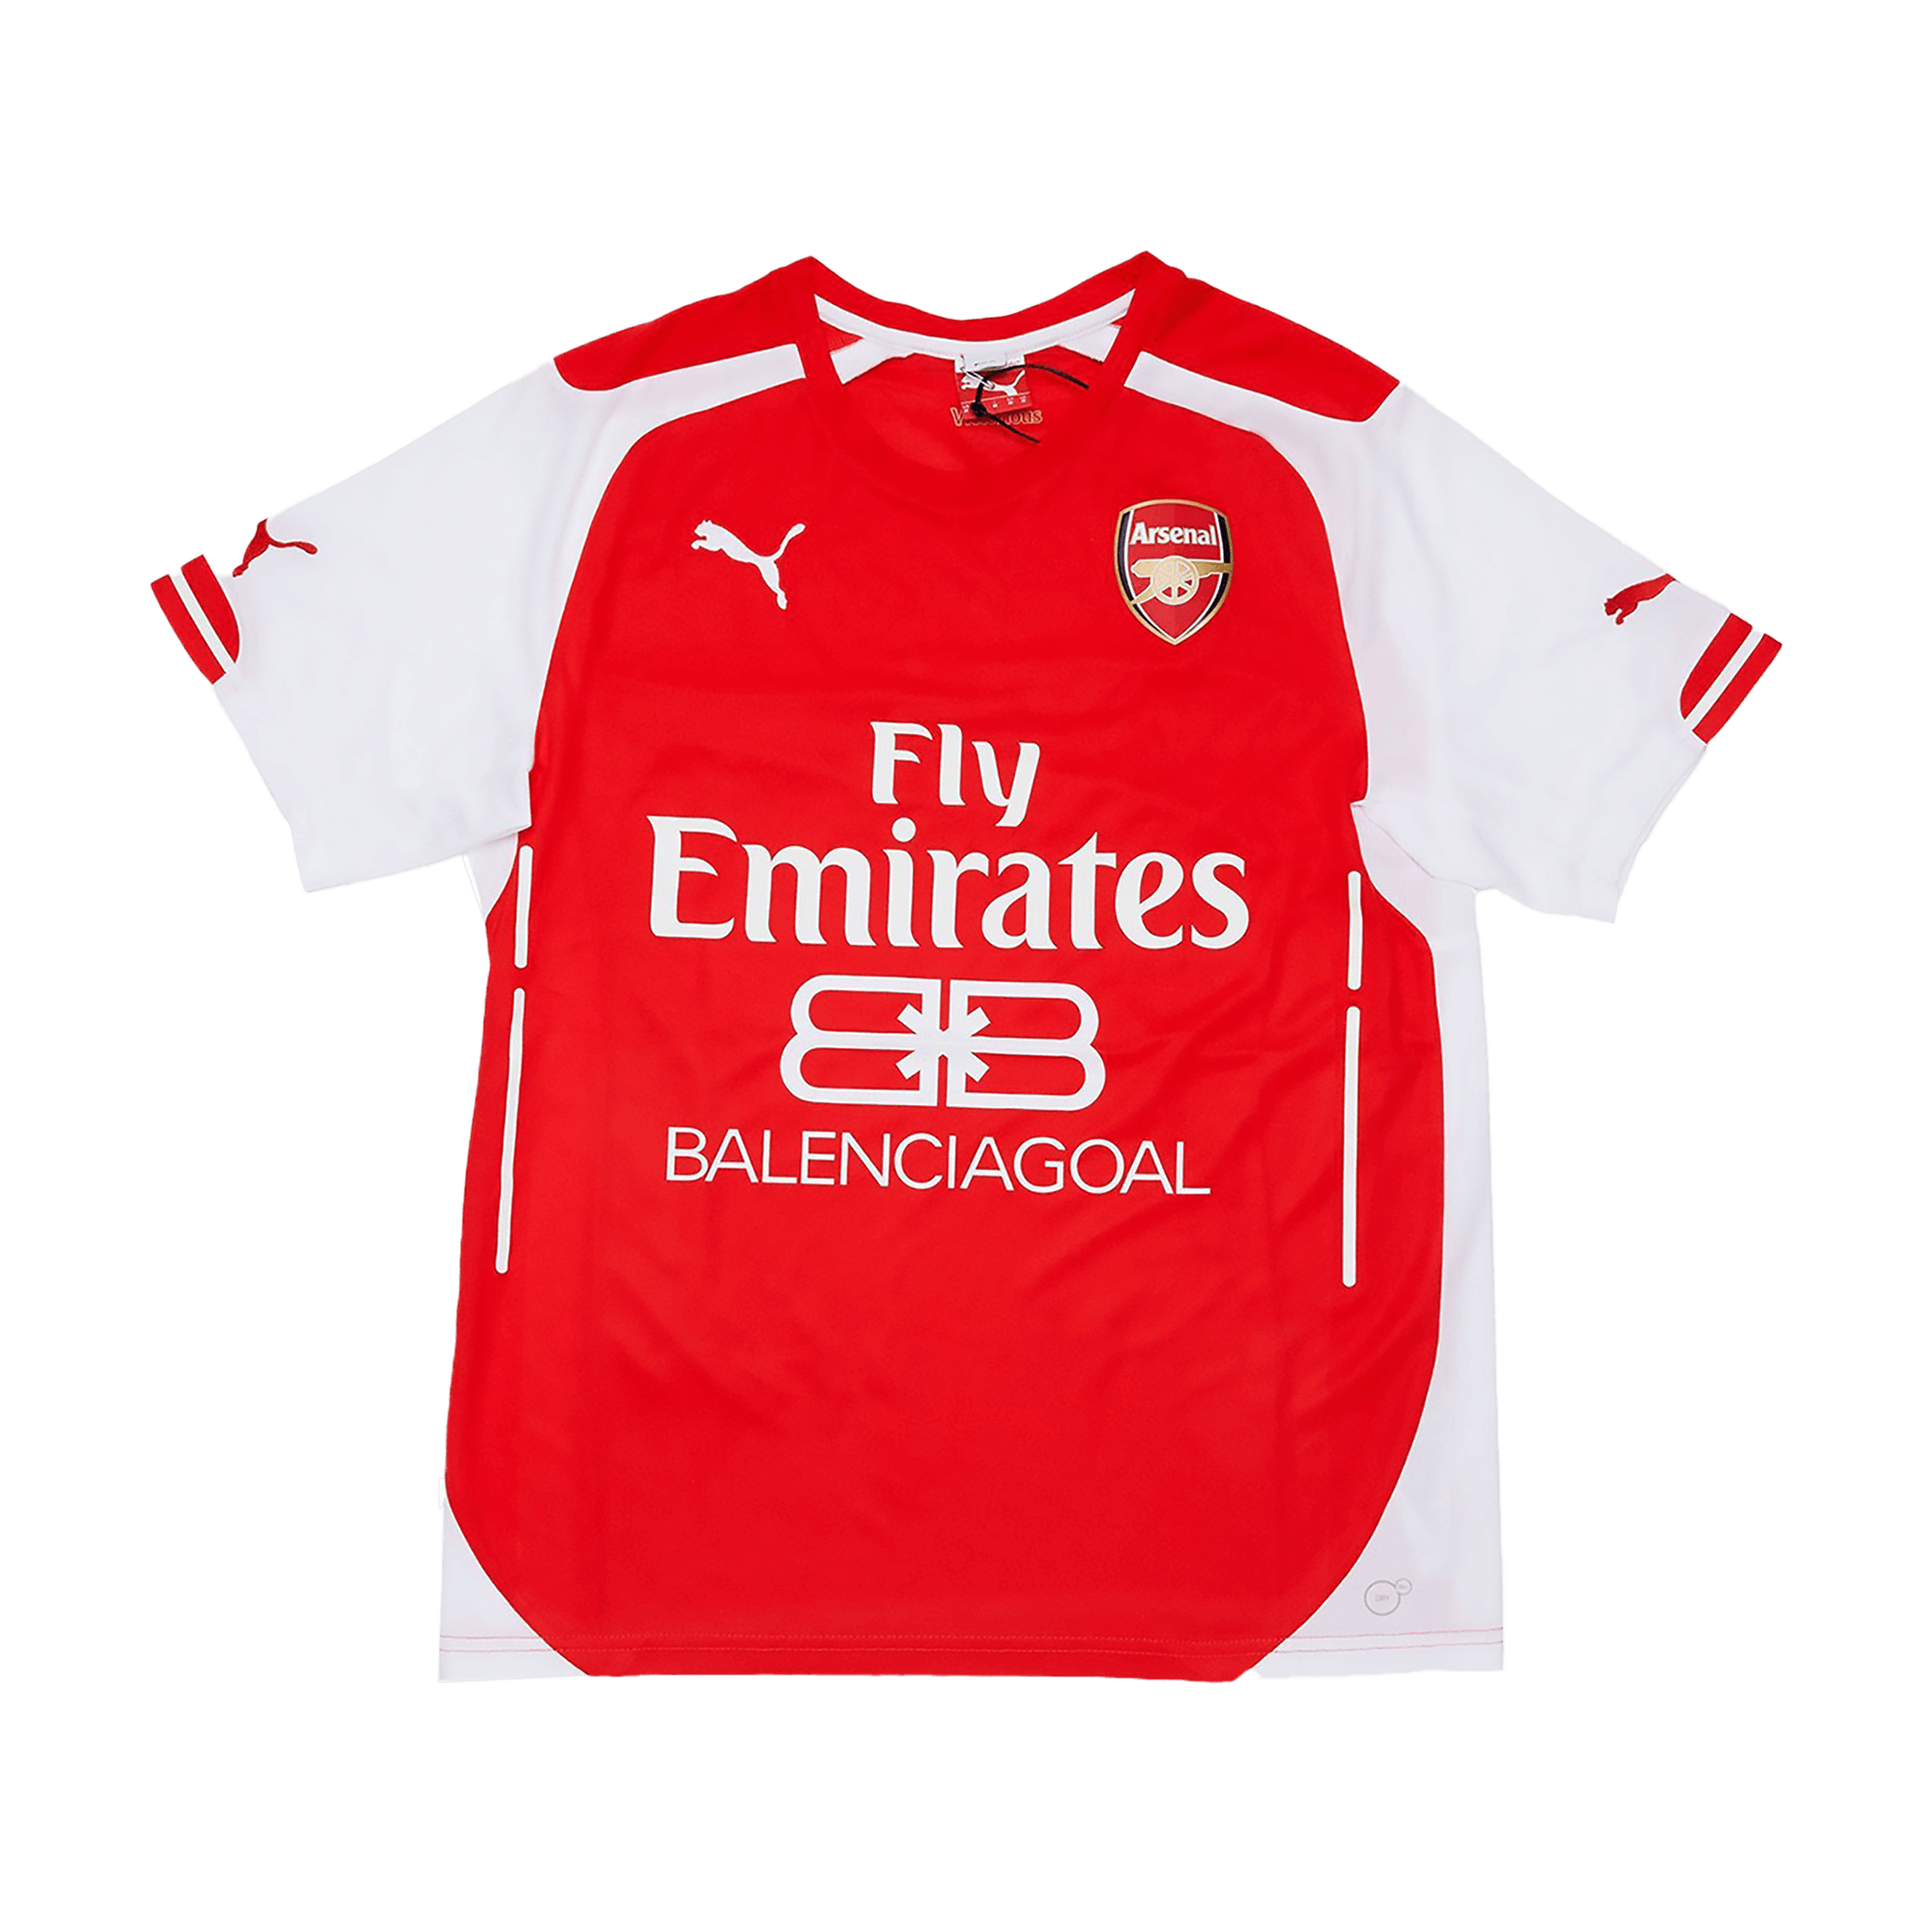 Arsenal 2014/2015 Balenciagoal